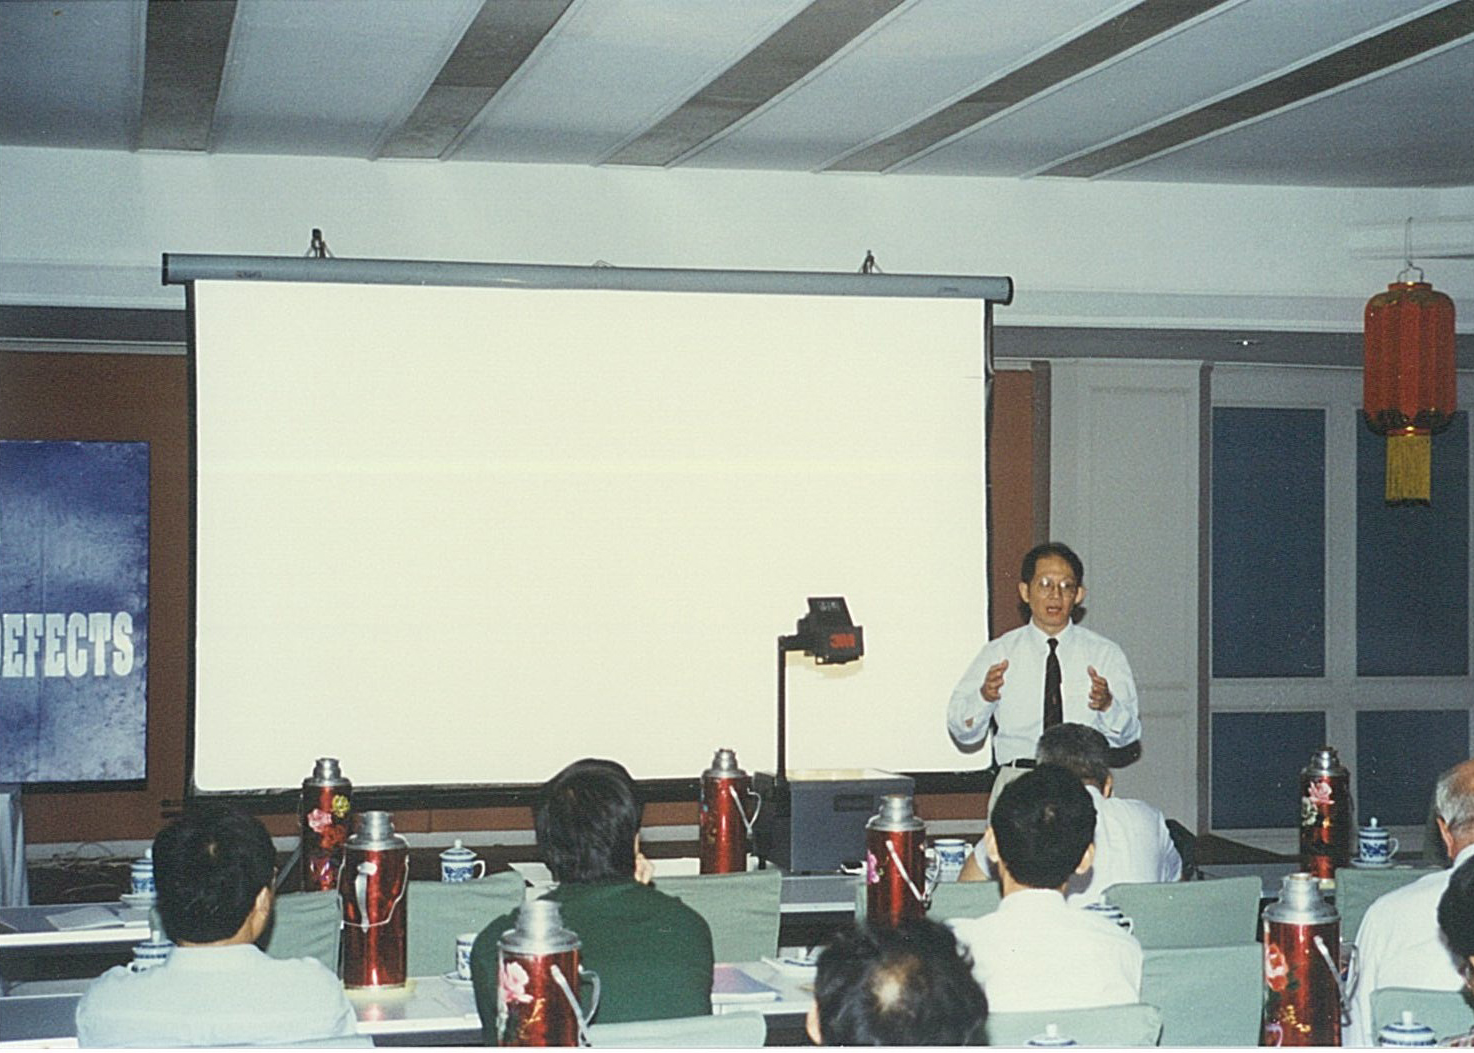 国际理论与应用力学联合会（IUTAM）“带缺陷物体流变学国际研讨会”在北京召开（1997年9月2-5日），白以龙出席会议。